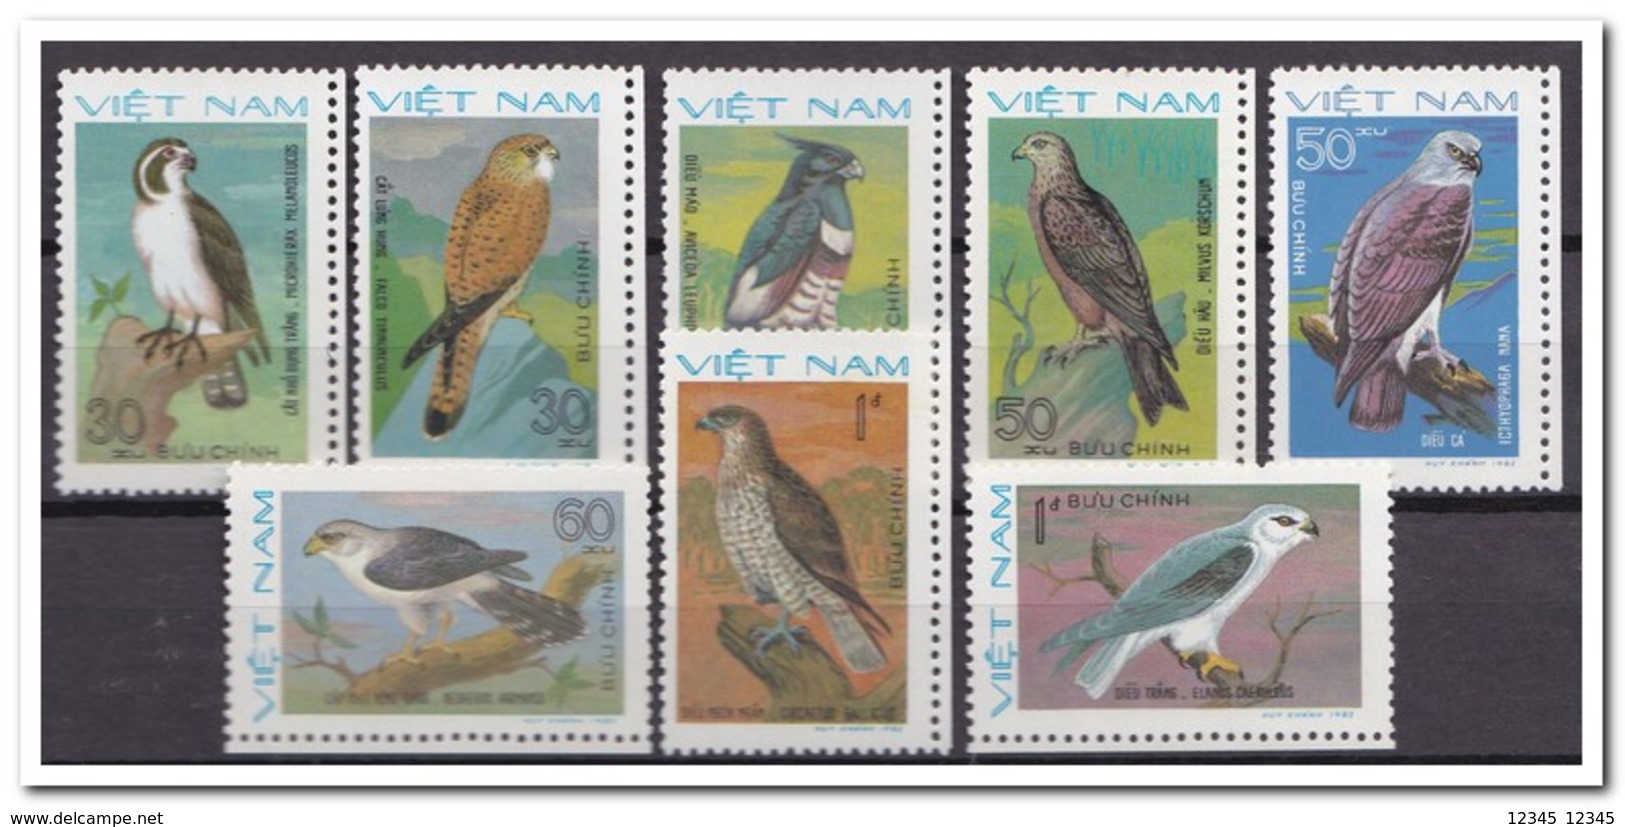 Vietnam 1982, Postfris MNH, Birds - Vietnam